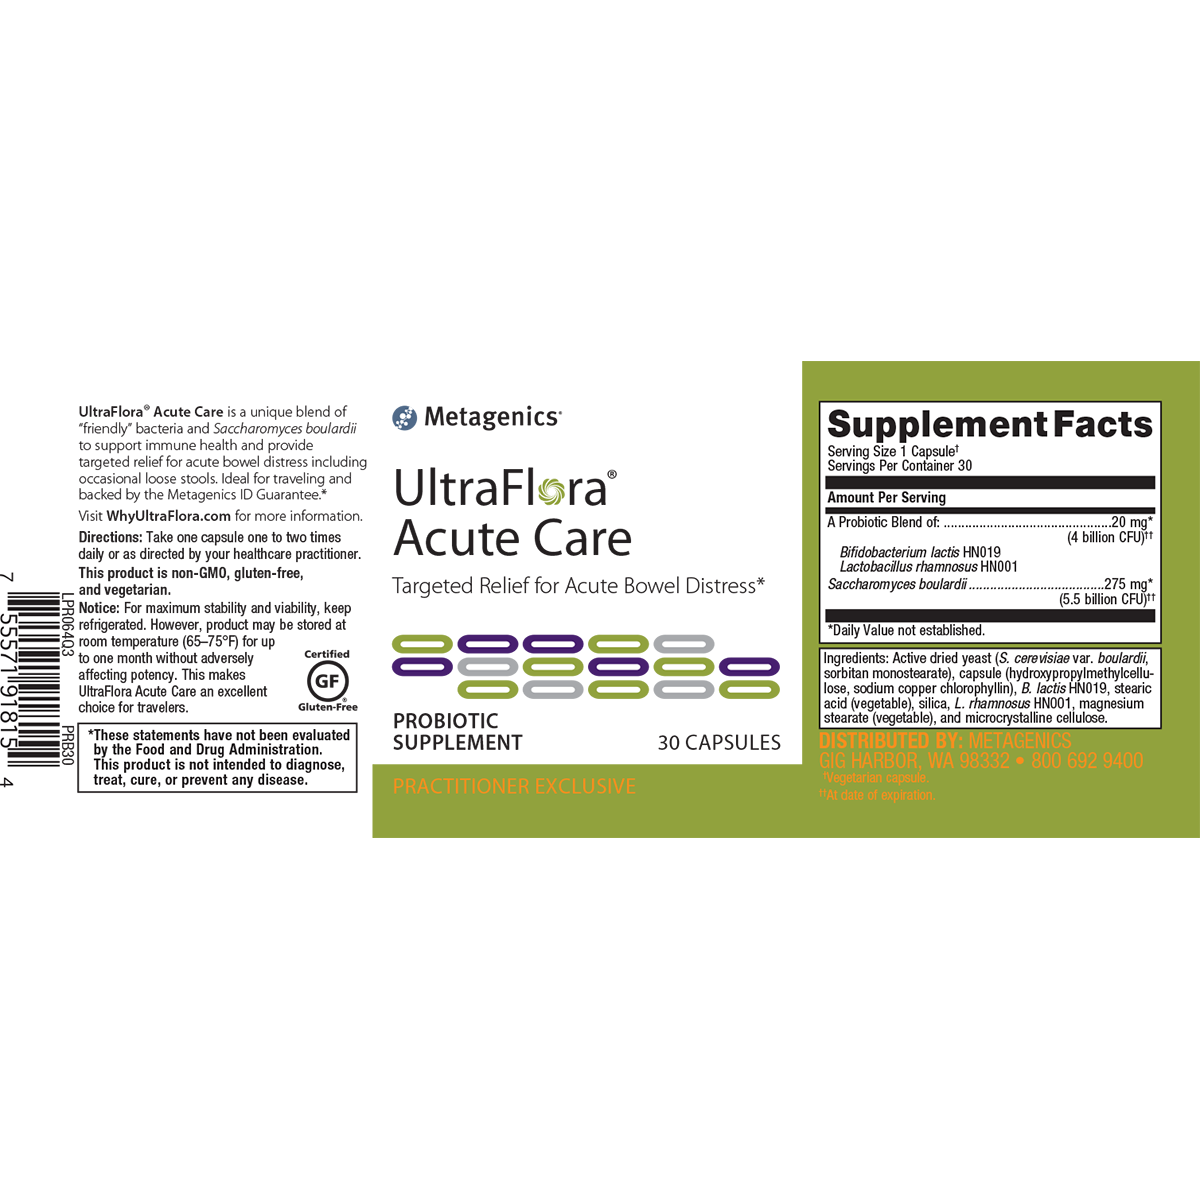 Metagenics UltraFlora Acute Care